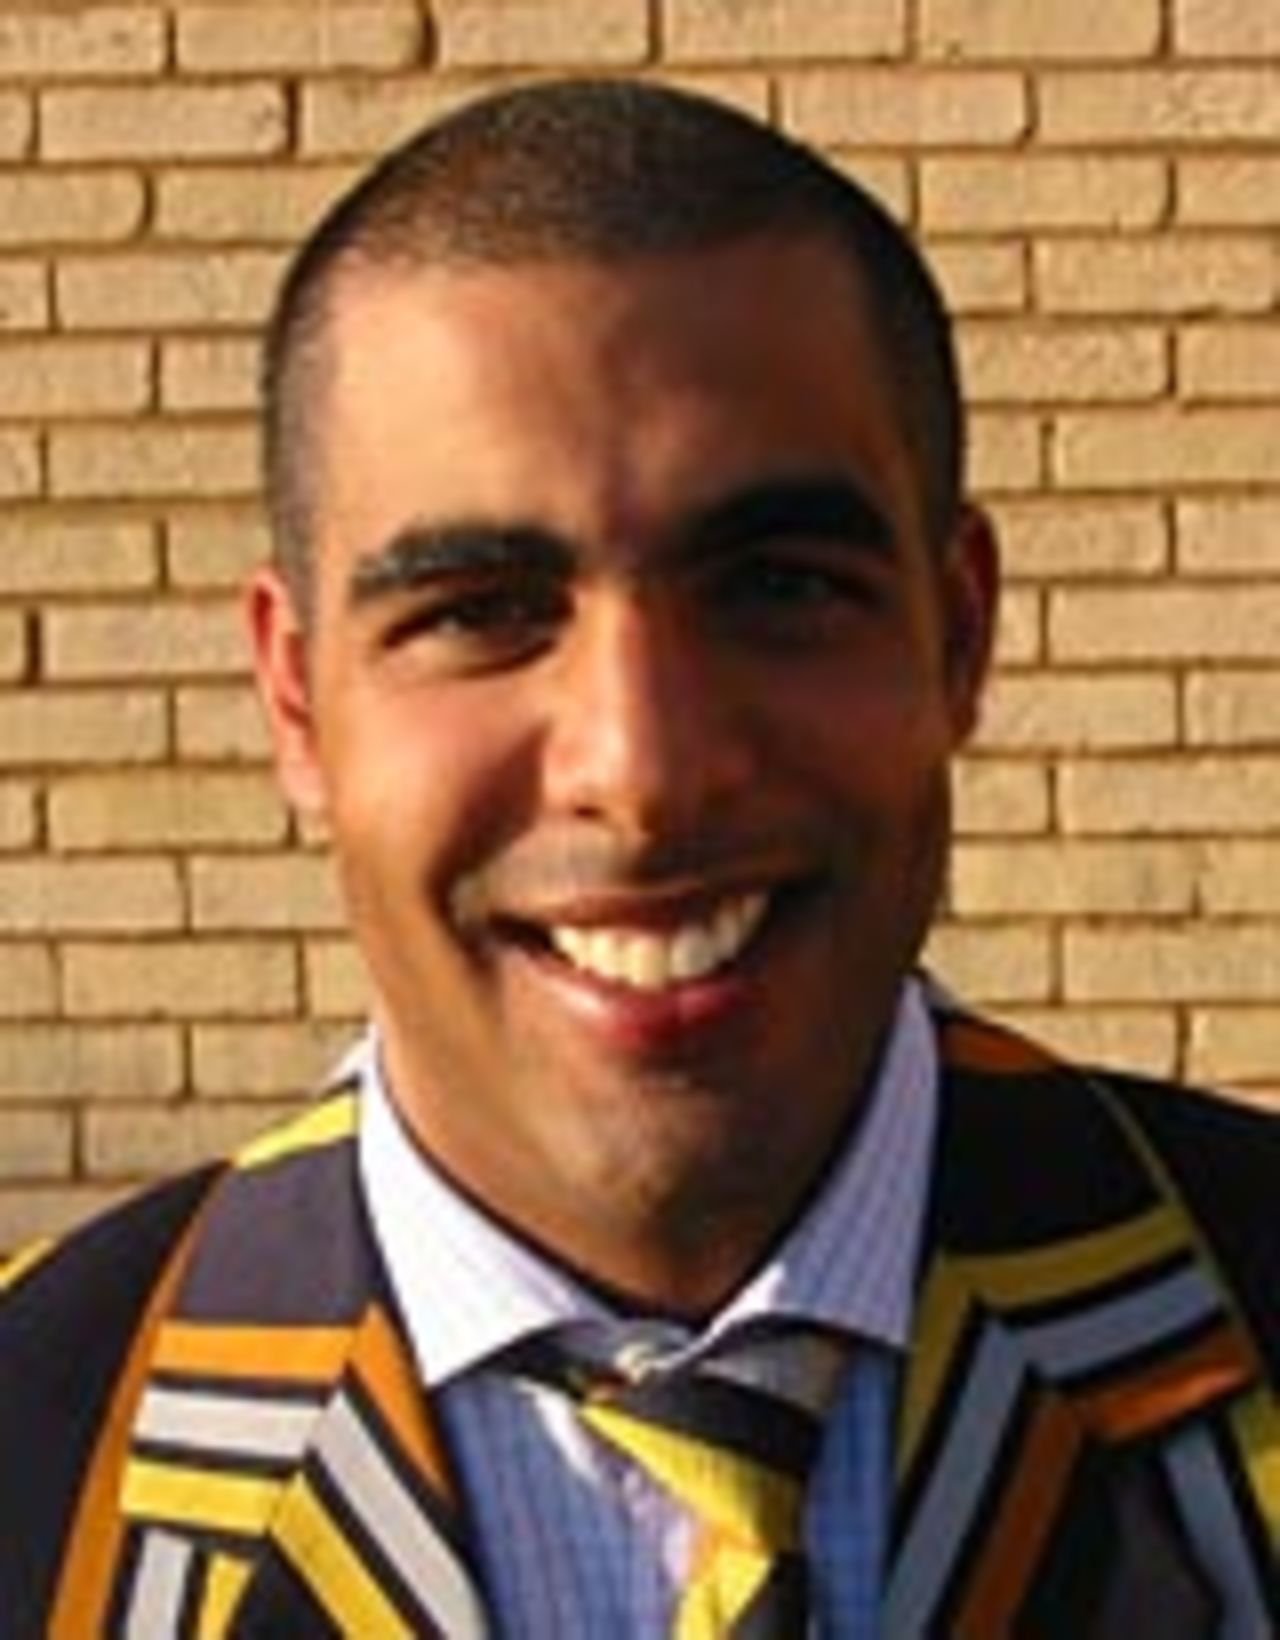 Abeed Janmohamed